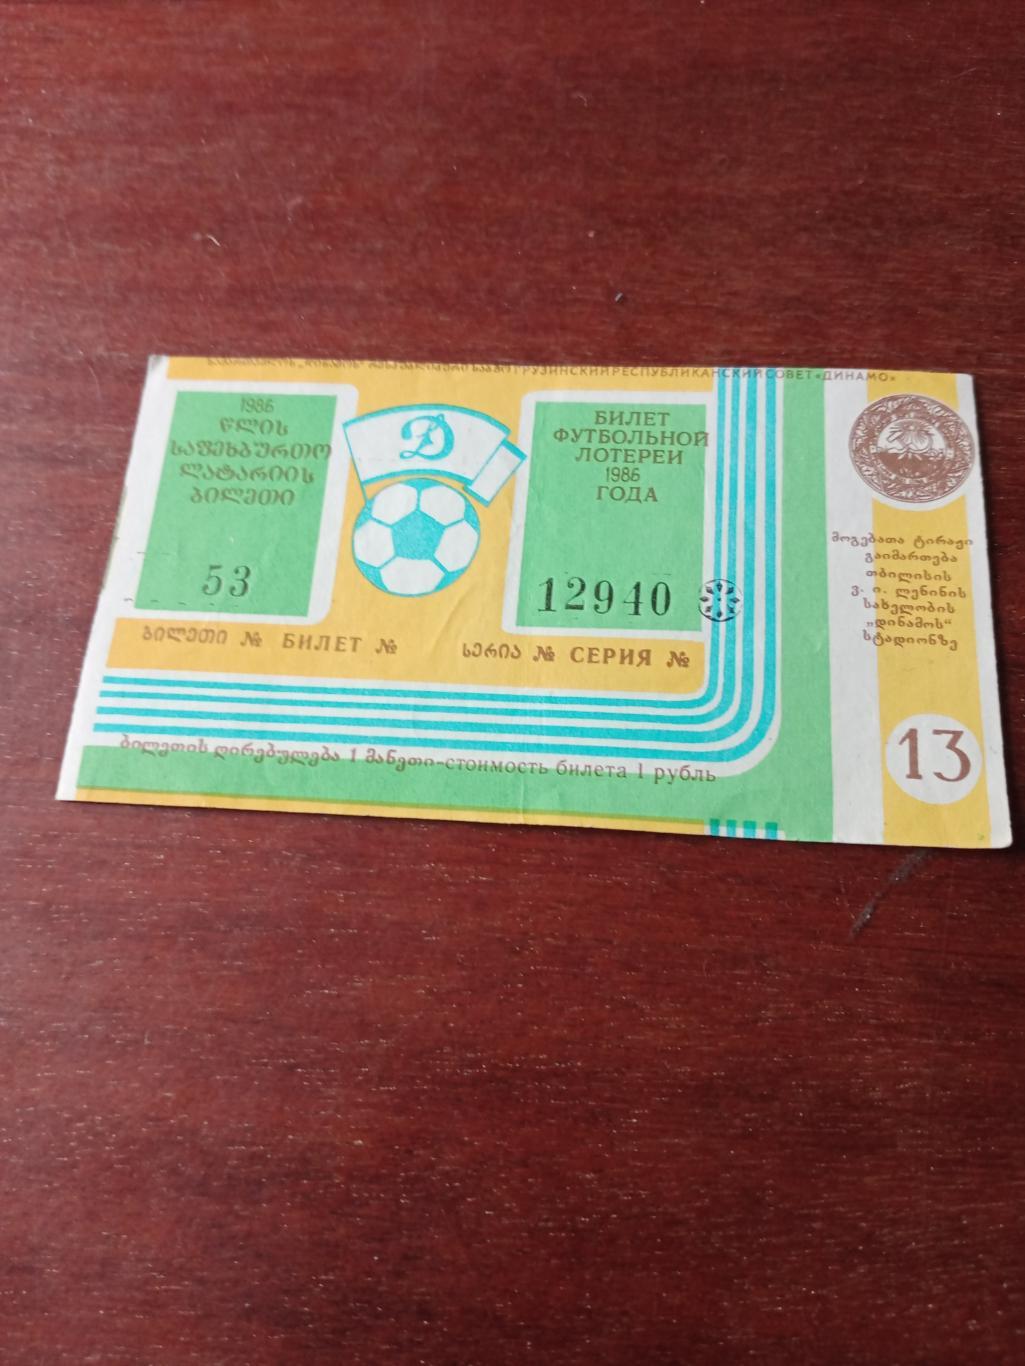 Билет футбольной лотереи. 1986 год Стадион Динамо Тбилиси